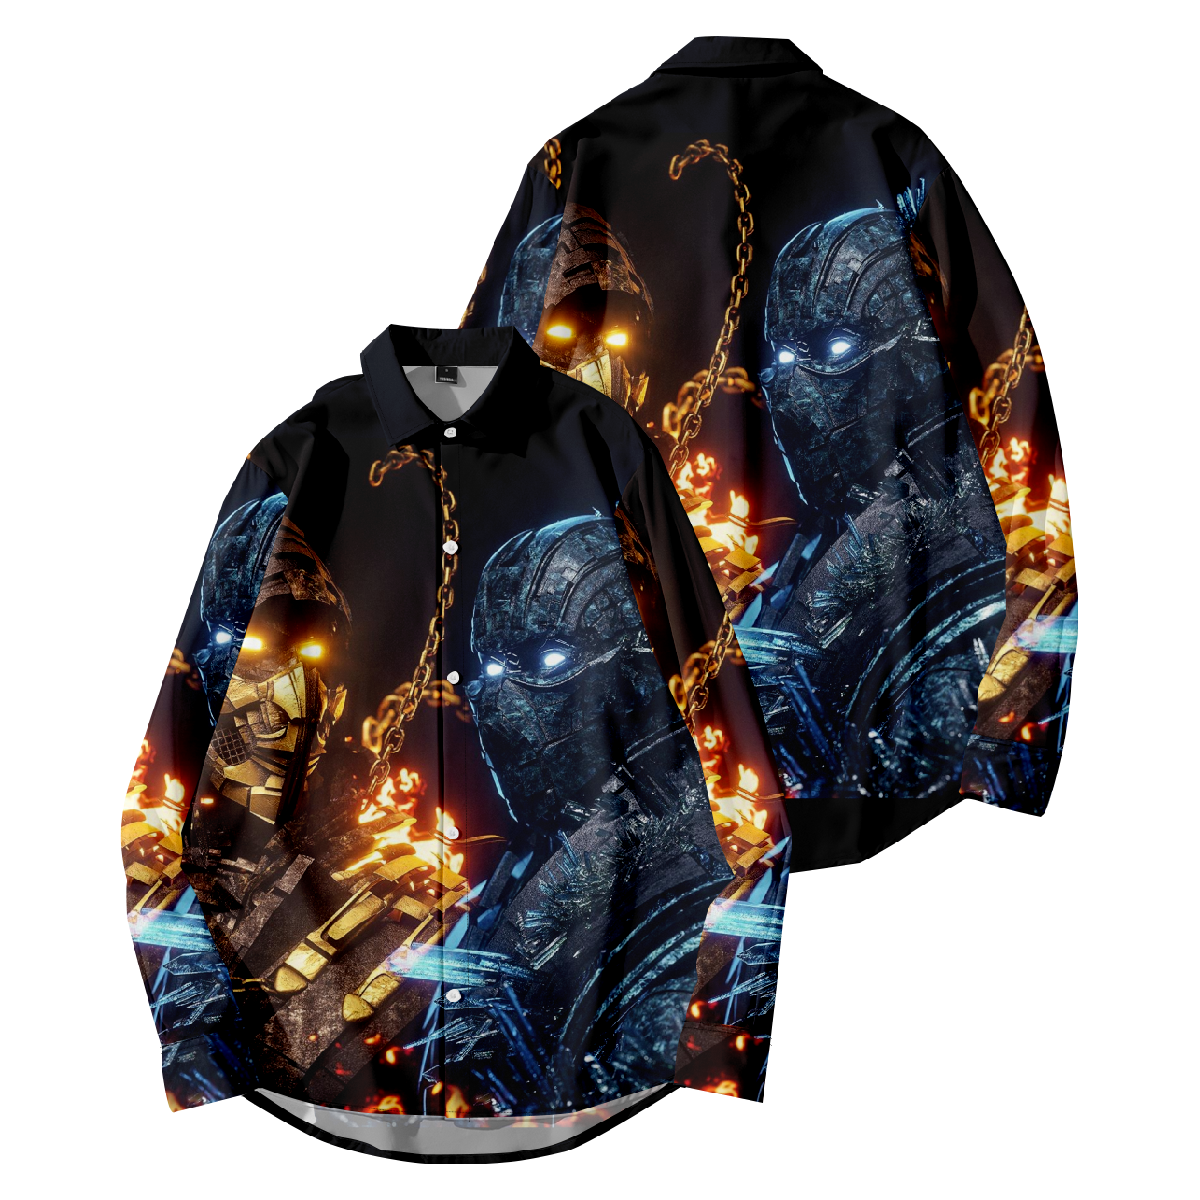 Mortal Kombat Button Up Shirt Long Sleeve Shirt for Men Regular Fit Ideal Gift